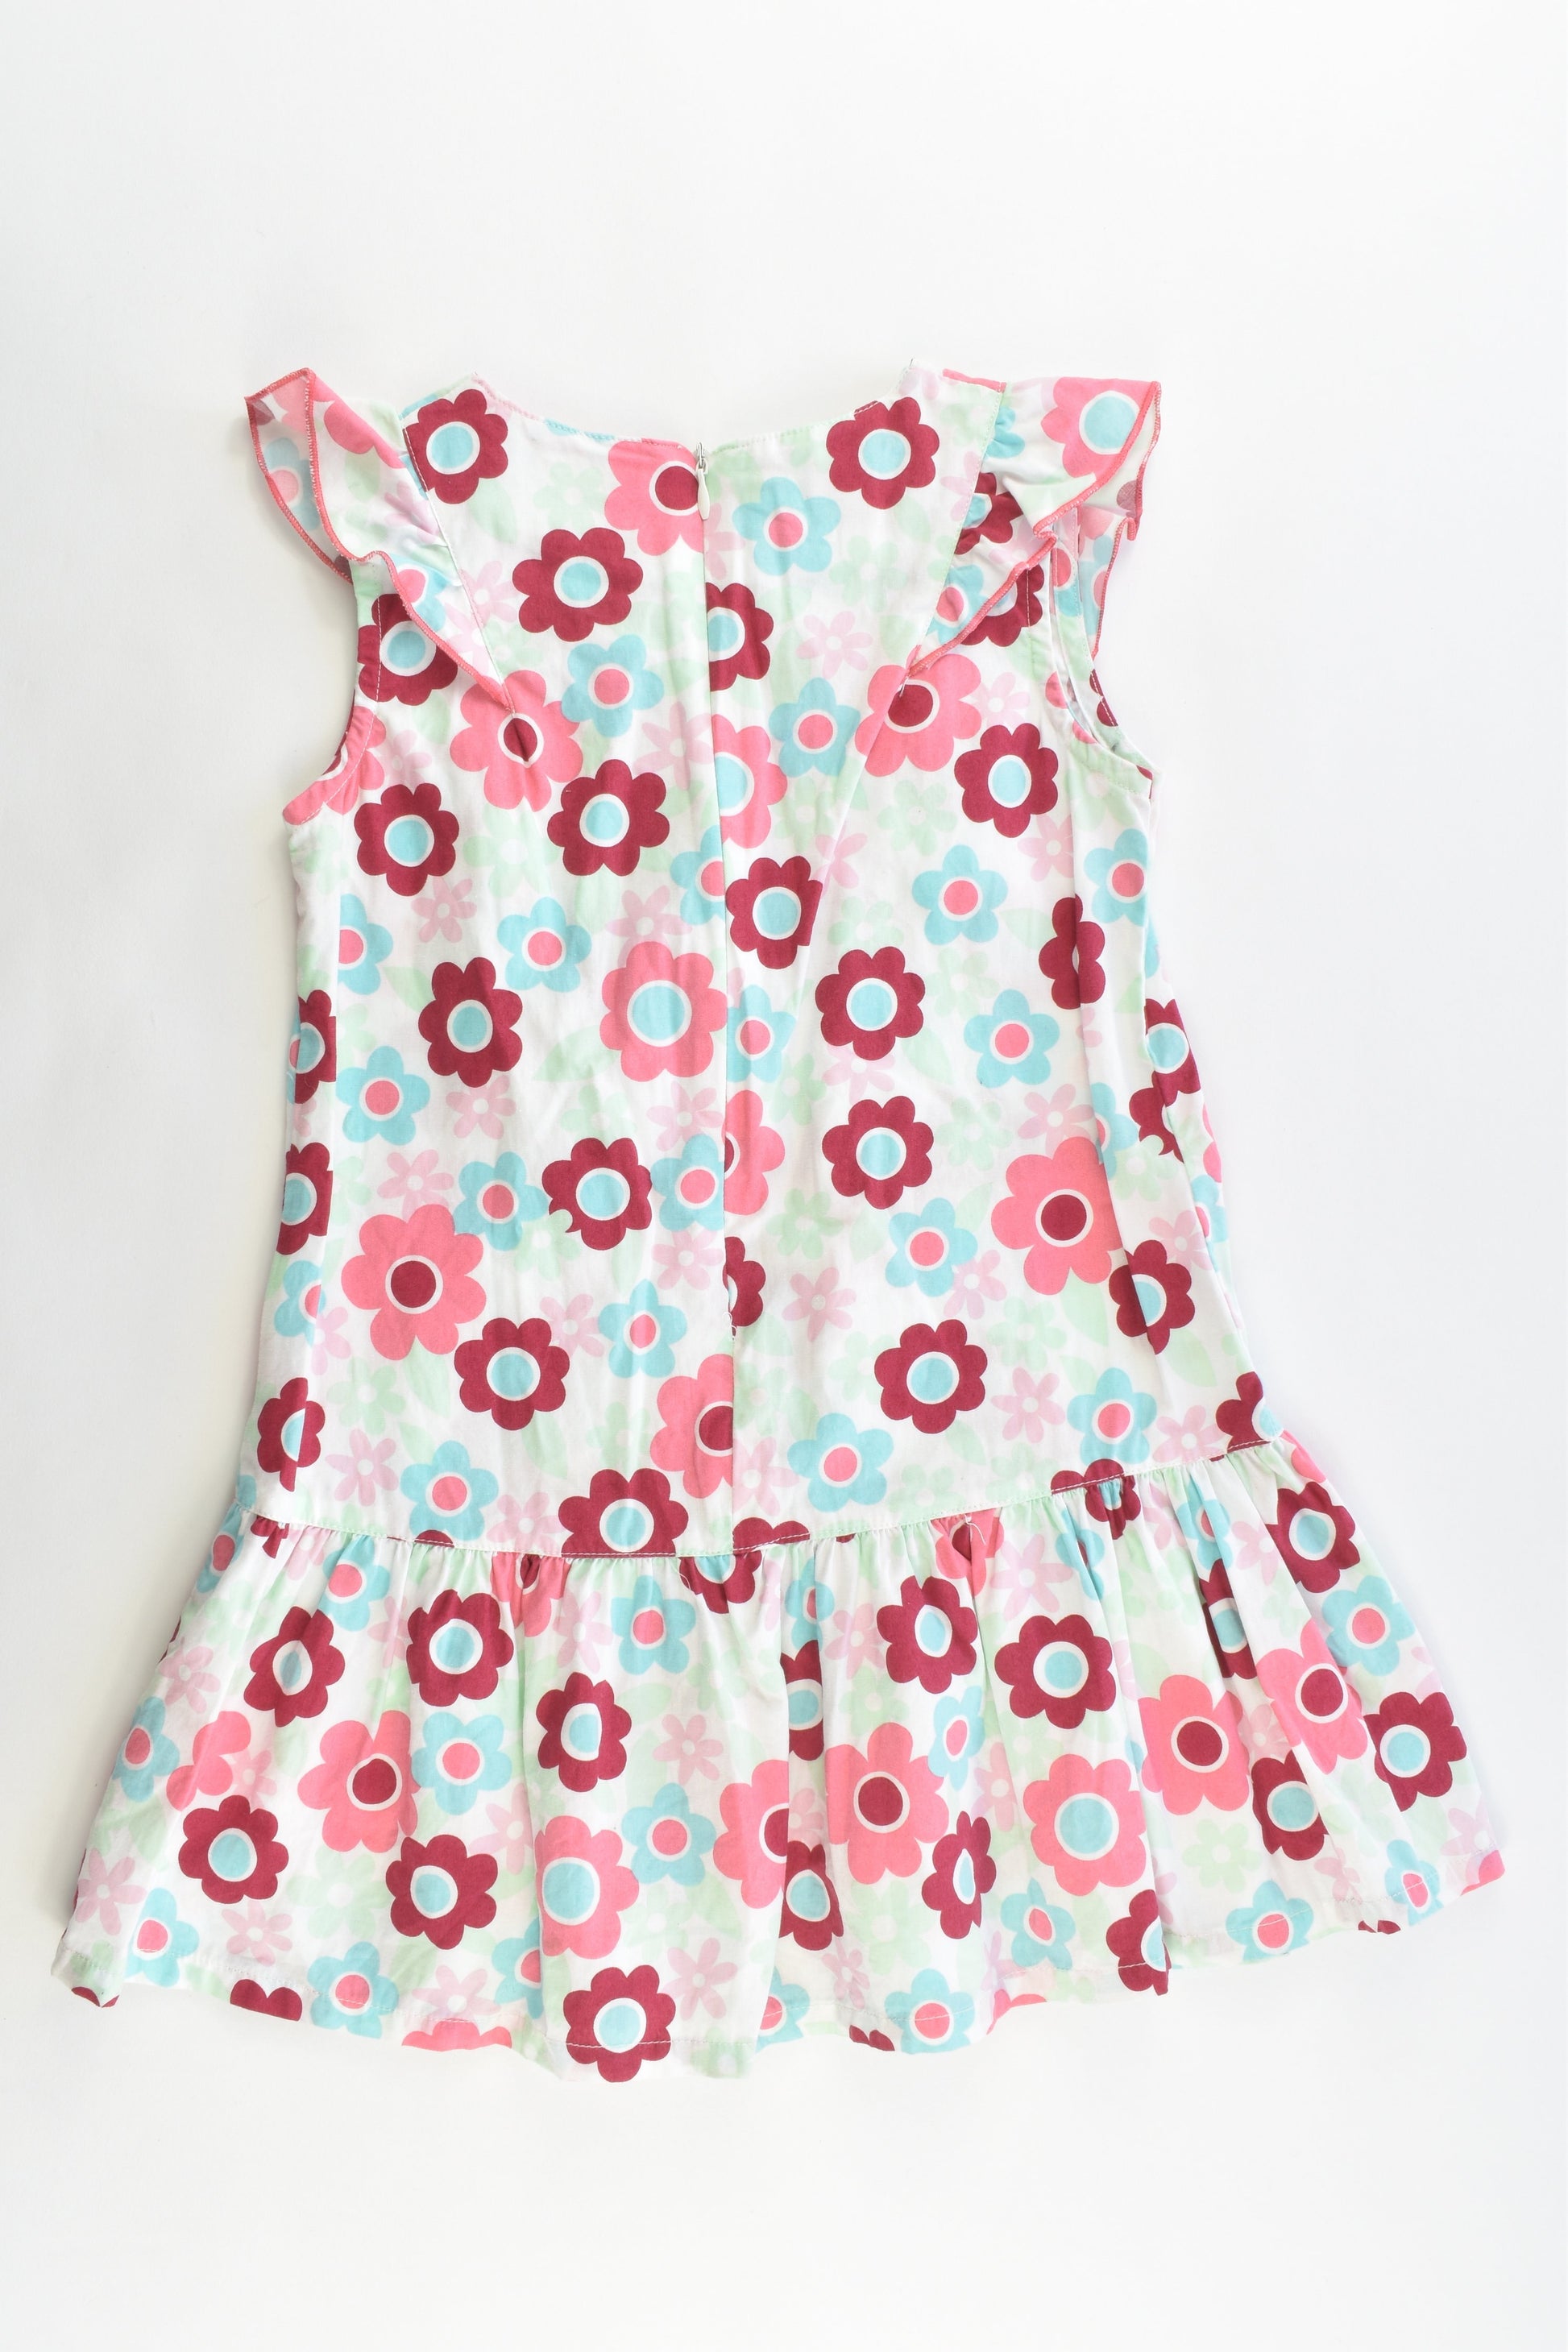 Comfort Wear For Smart Kids Size 4 Floral Dress